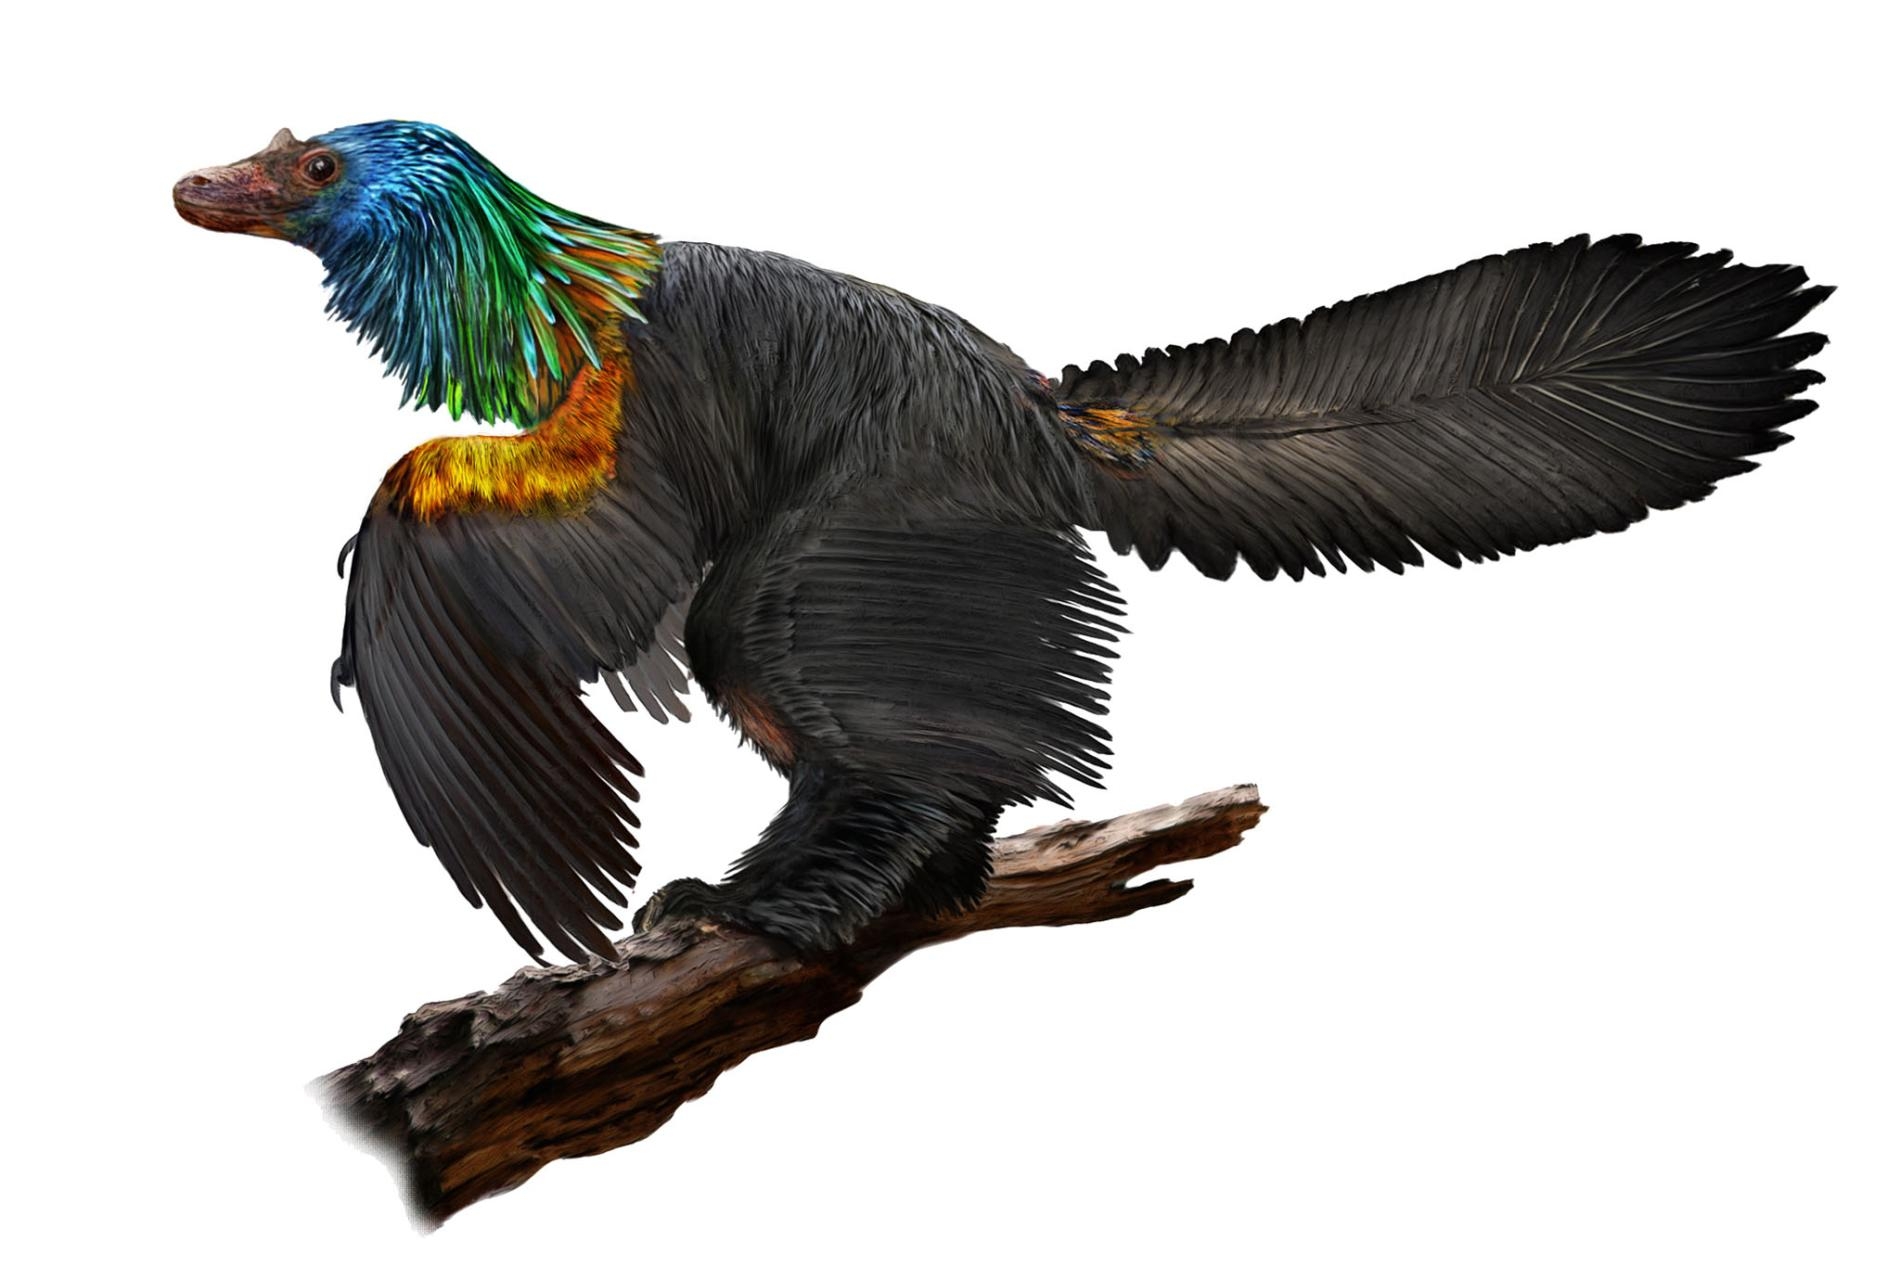 新發現的「彩虹」恐龍可能曾如蜂鳥般耀眼